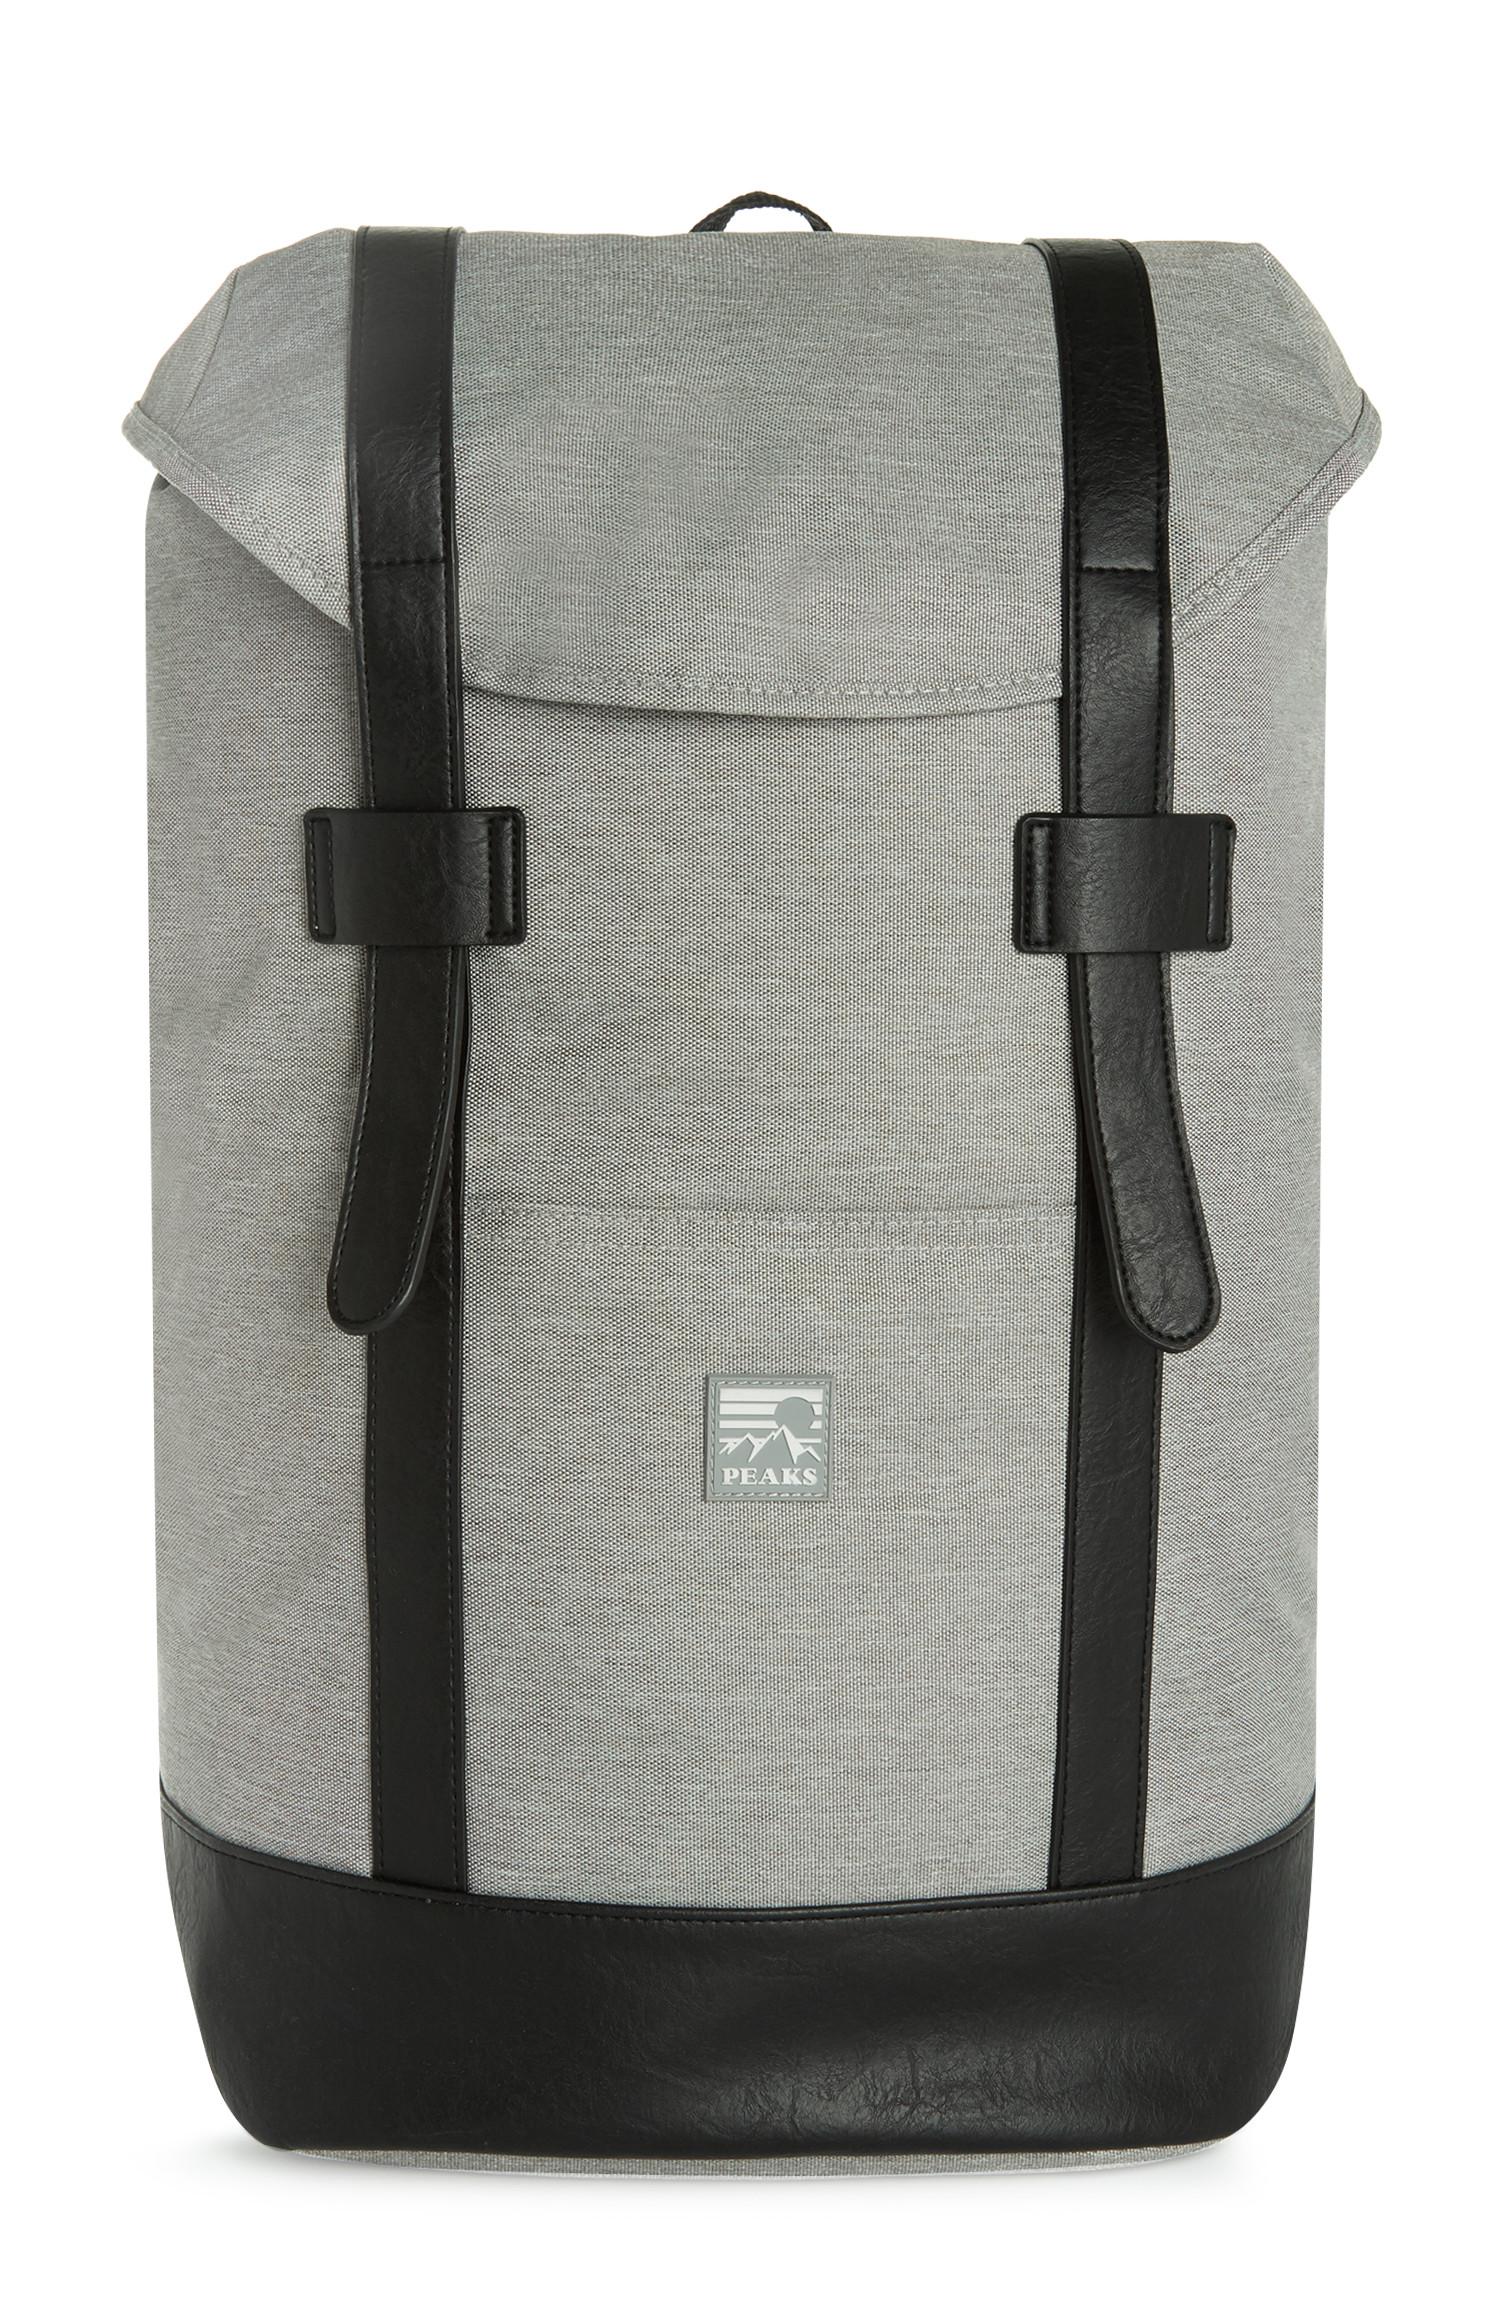 adidas atric backpack large